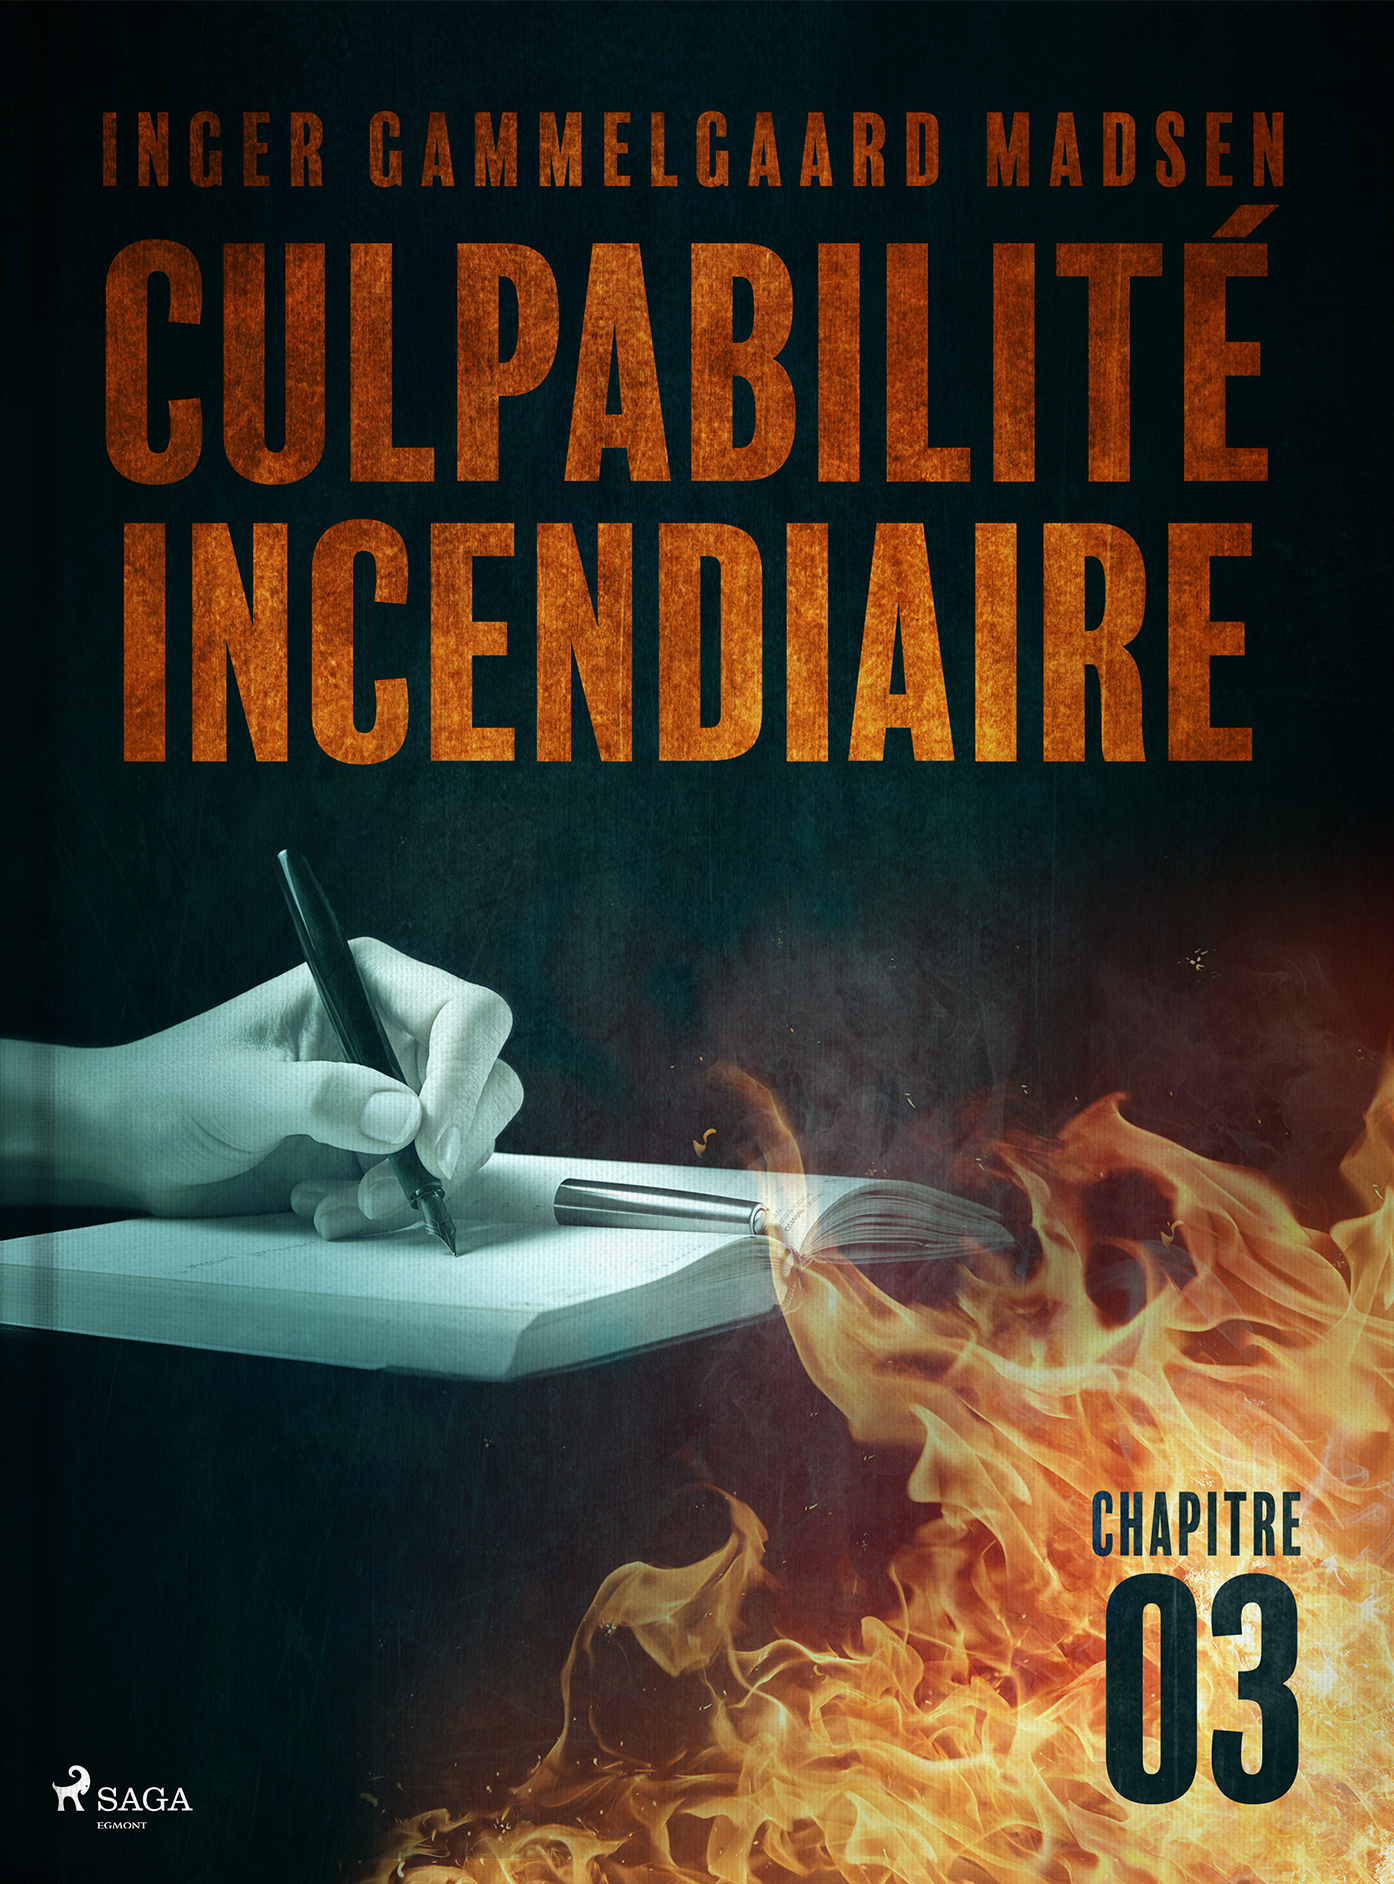 Culpabilité incendiaire (chapitre 3)